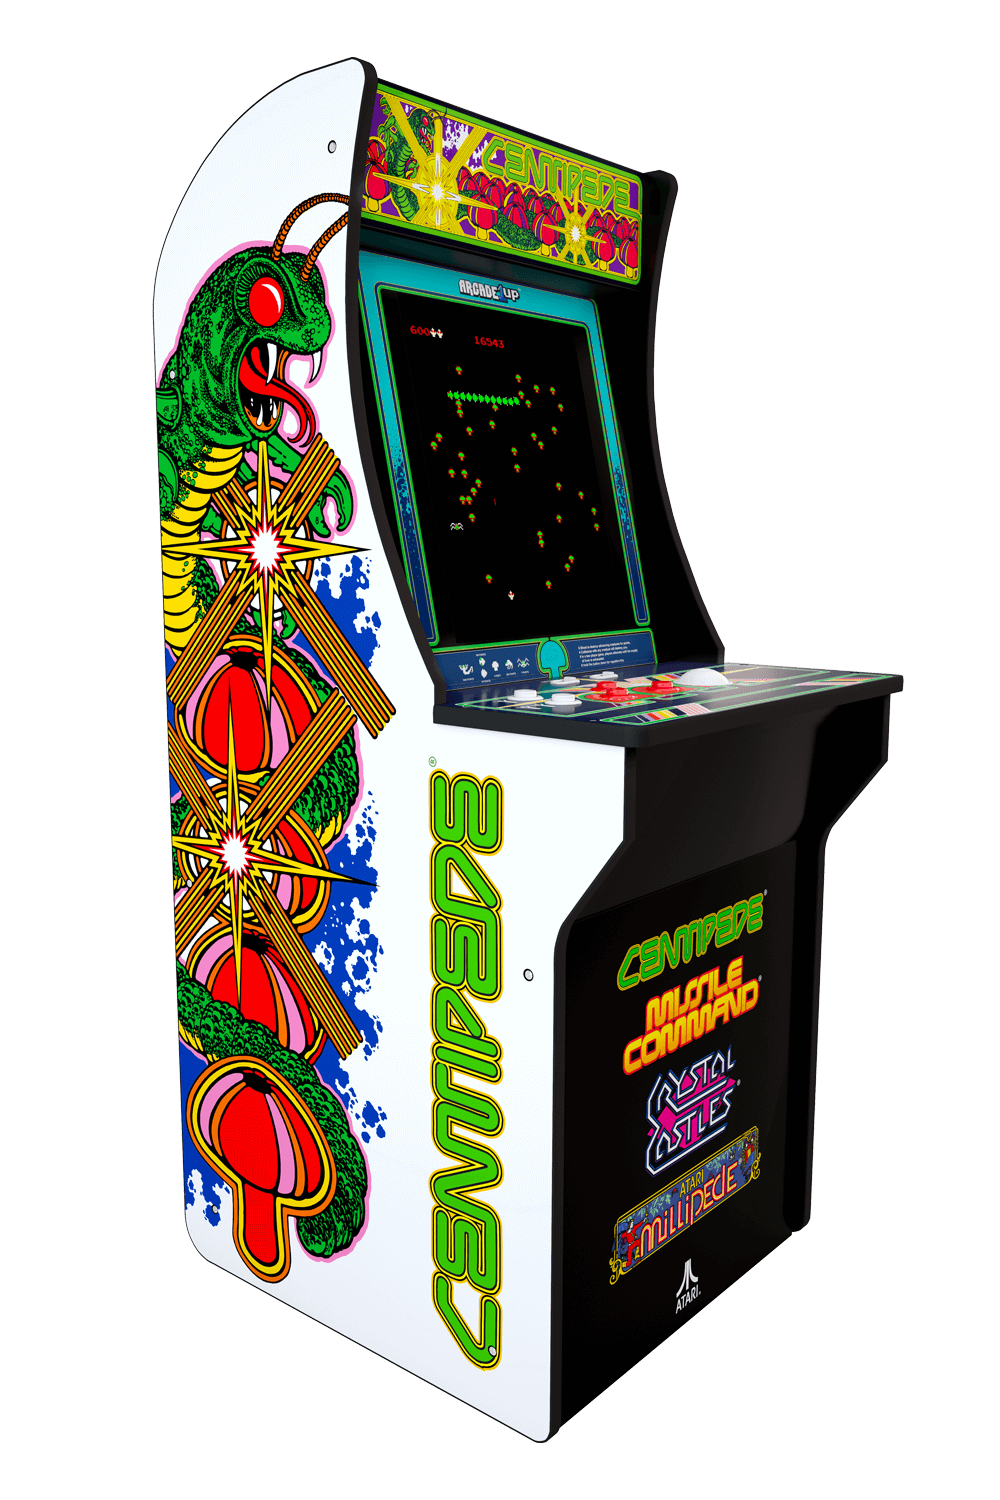 Centipede Arcade Cabinet Arcade1up